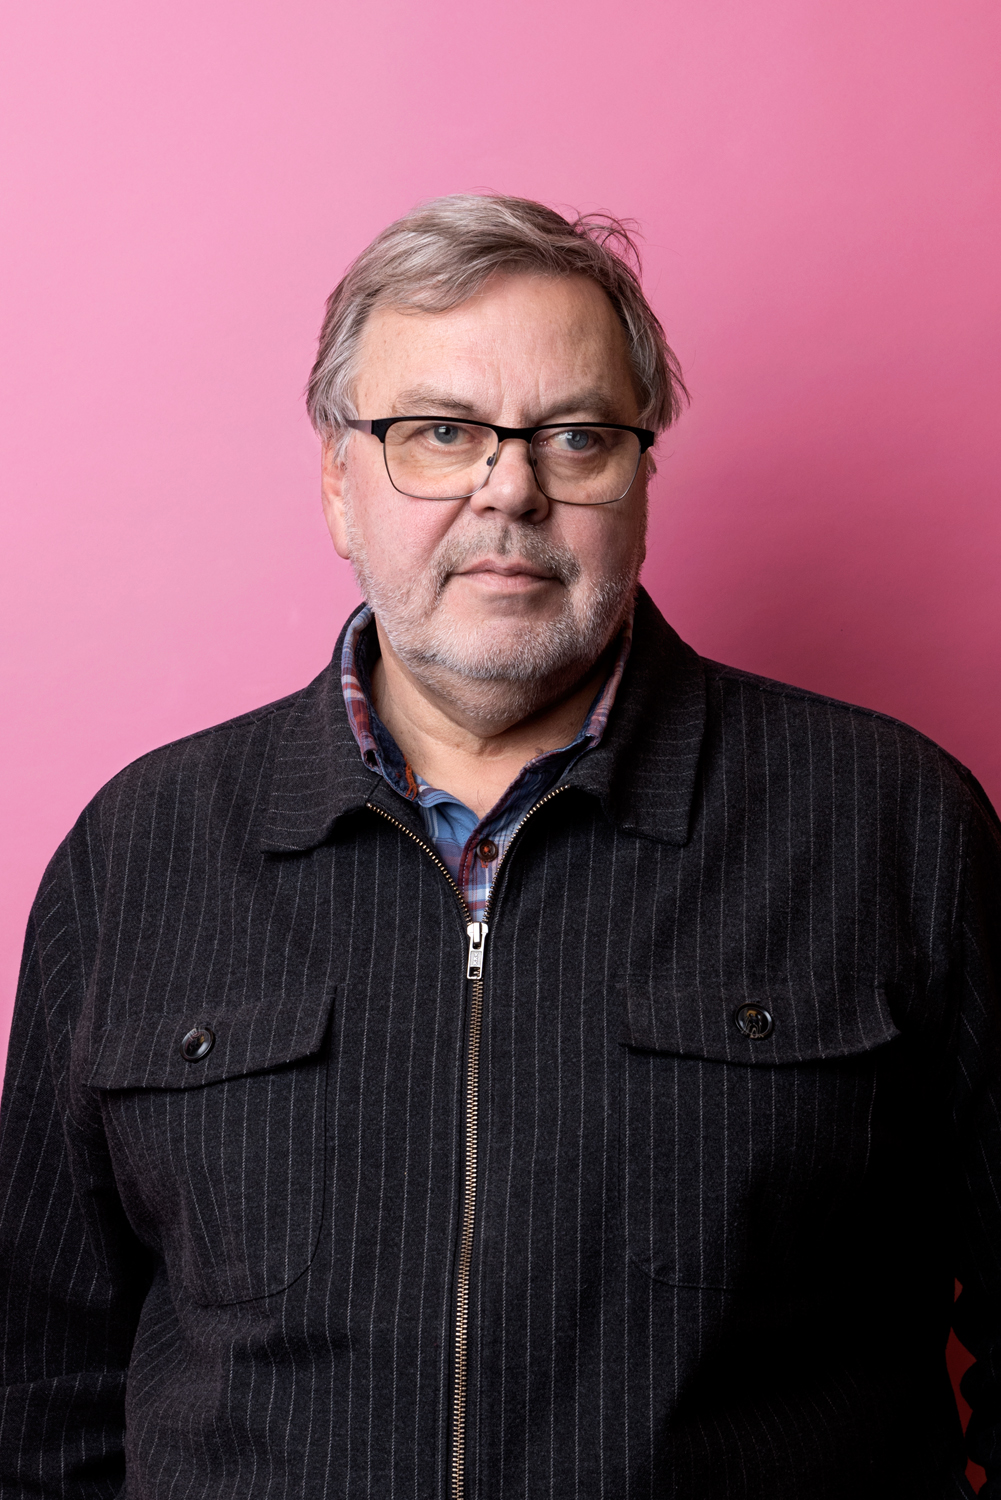 Porträttbild av Mats Bernerstedt. Mats har kritsstrecksrandig tröja över en rutig skjorta.